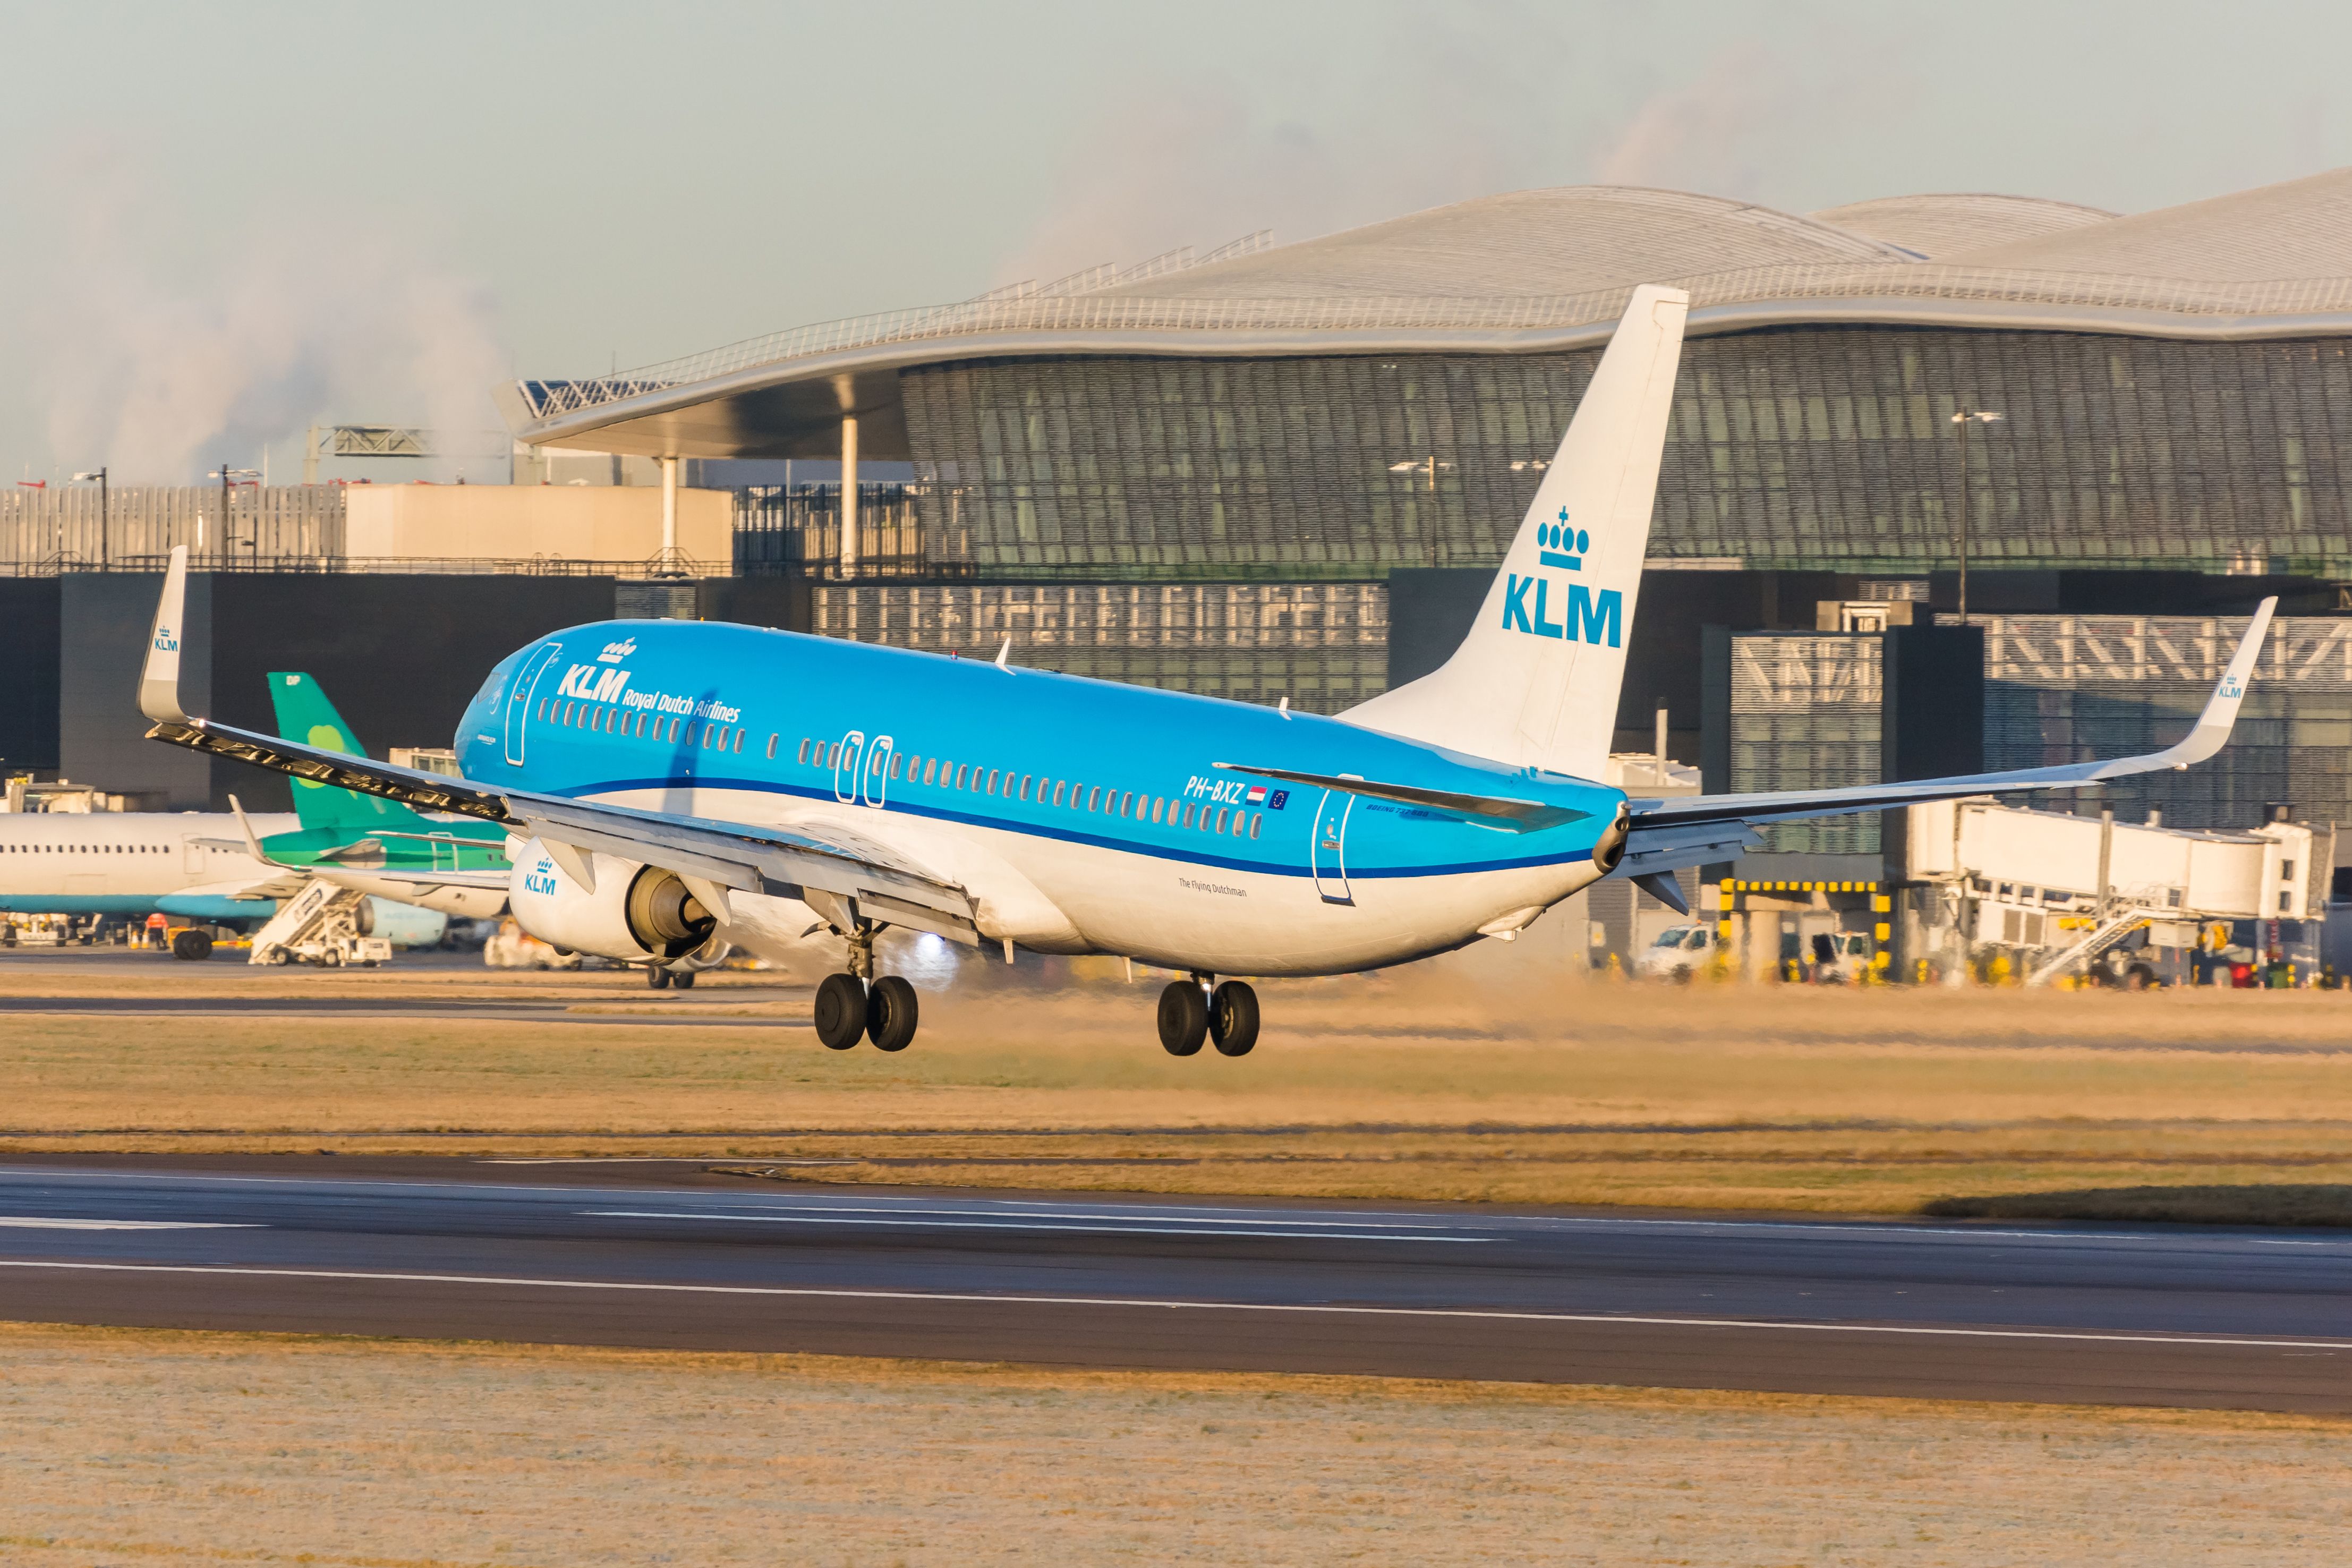 KLM Boeing 737 landing at Heathrow Airport 